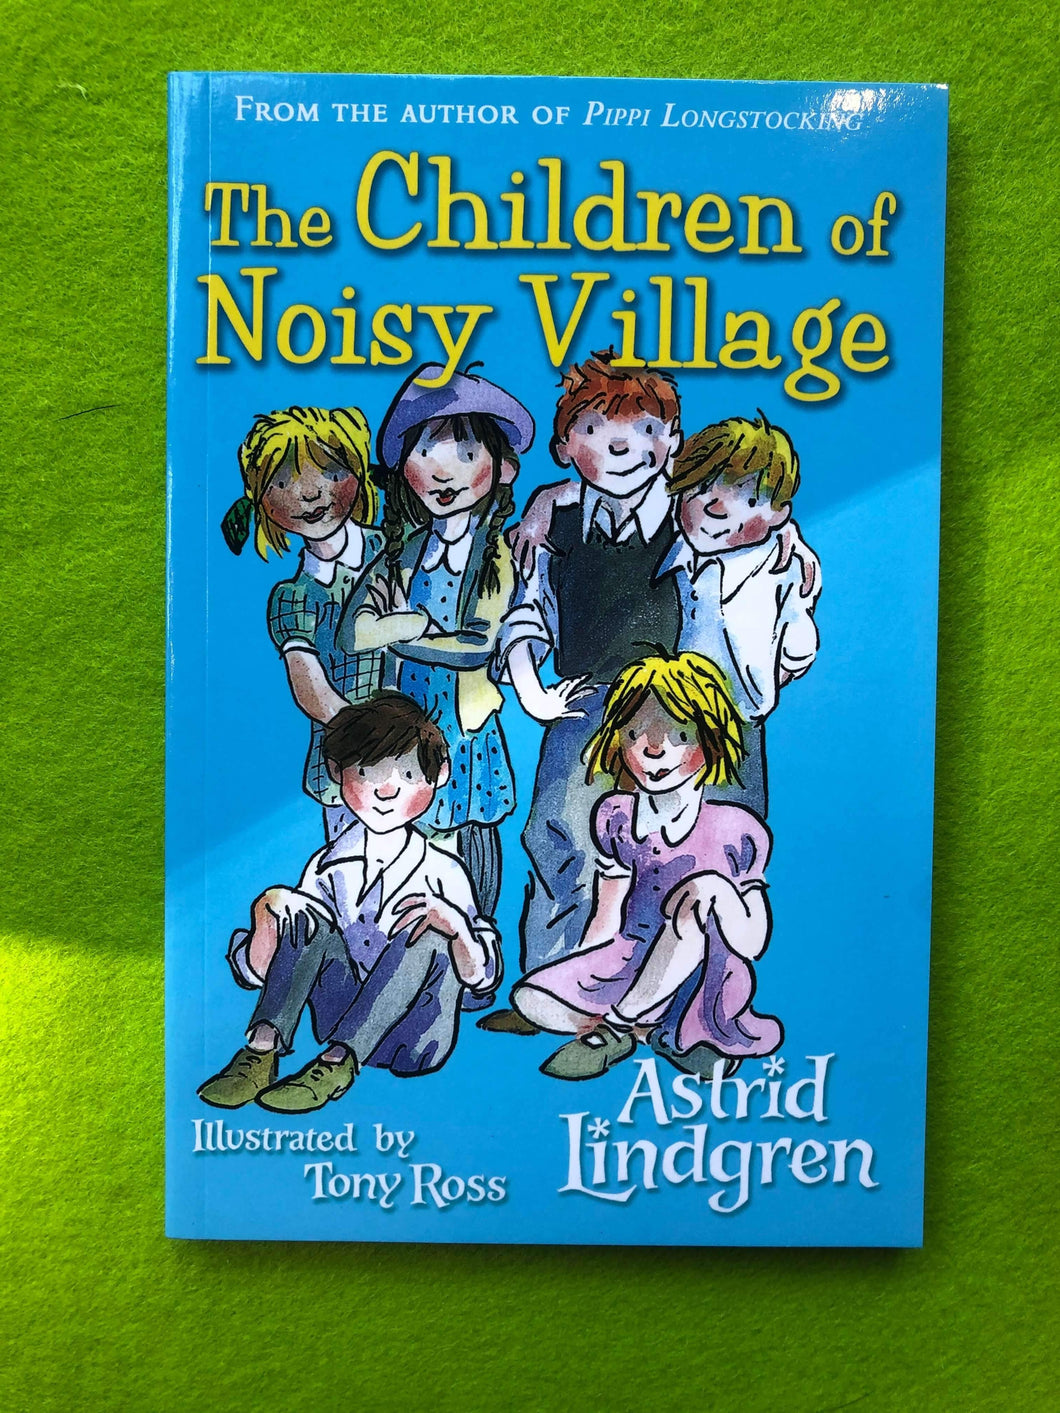 Astrid Lindgren - The Children of Noisy Village